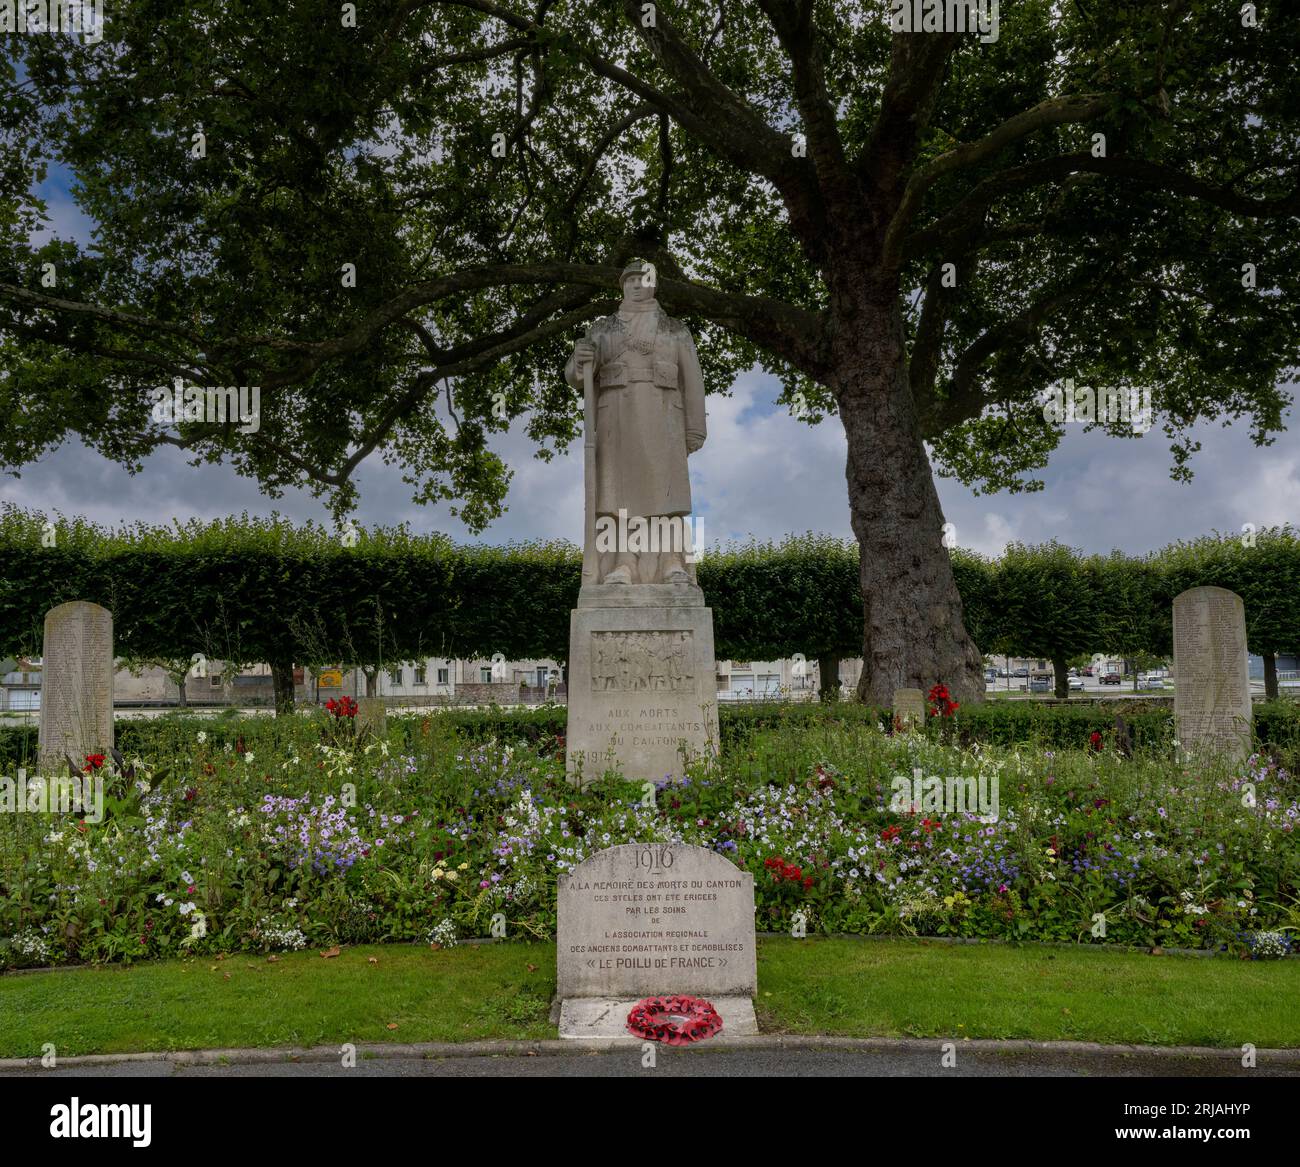 Monument aux combattants de la premiere guerre mondiale - first world war memorial -La Ferte-Sous-Jouarre, Seine-et-Marne, Ile-de-France, France, EU Stock Photo